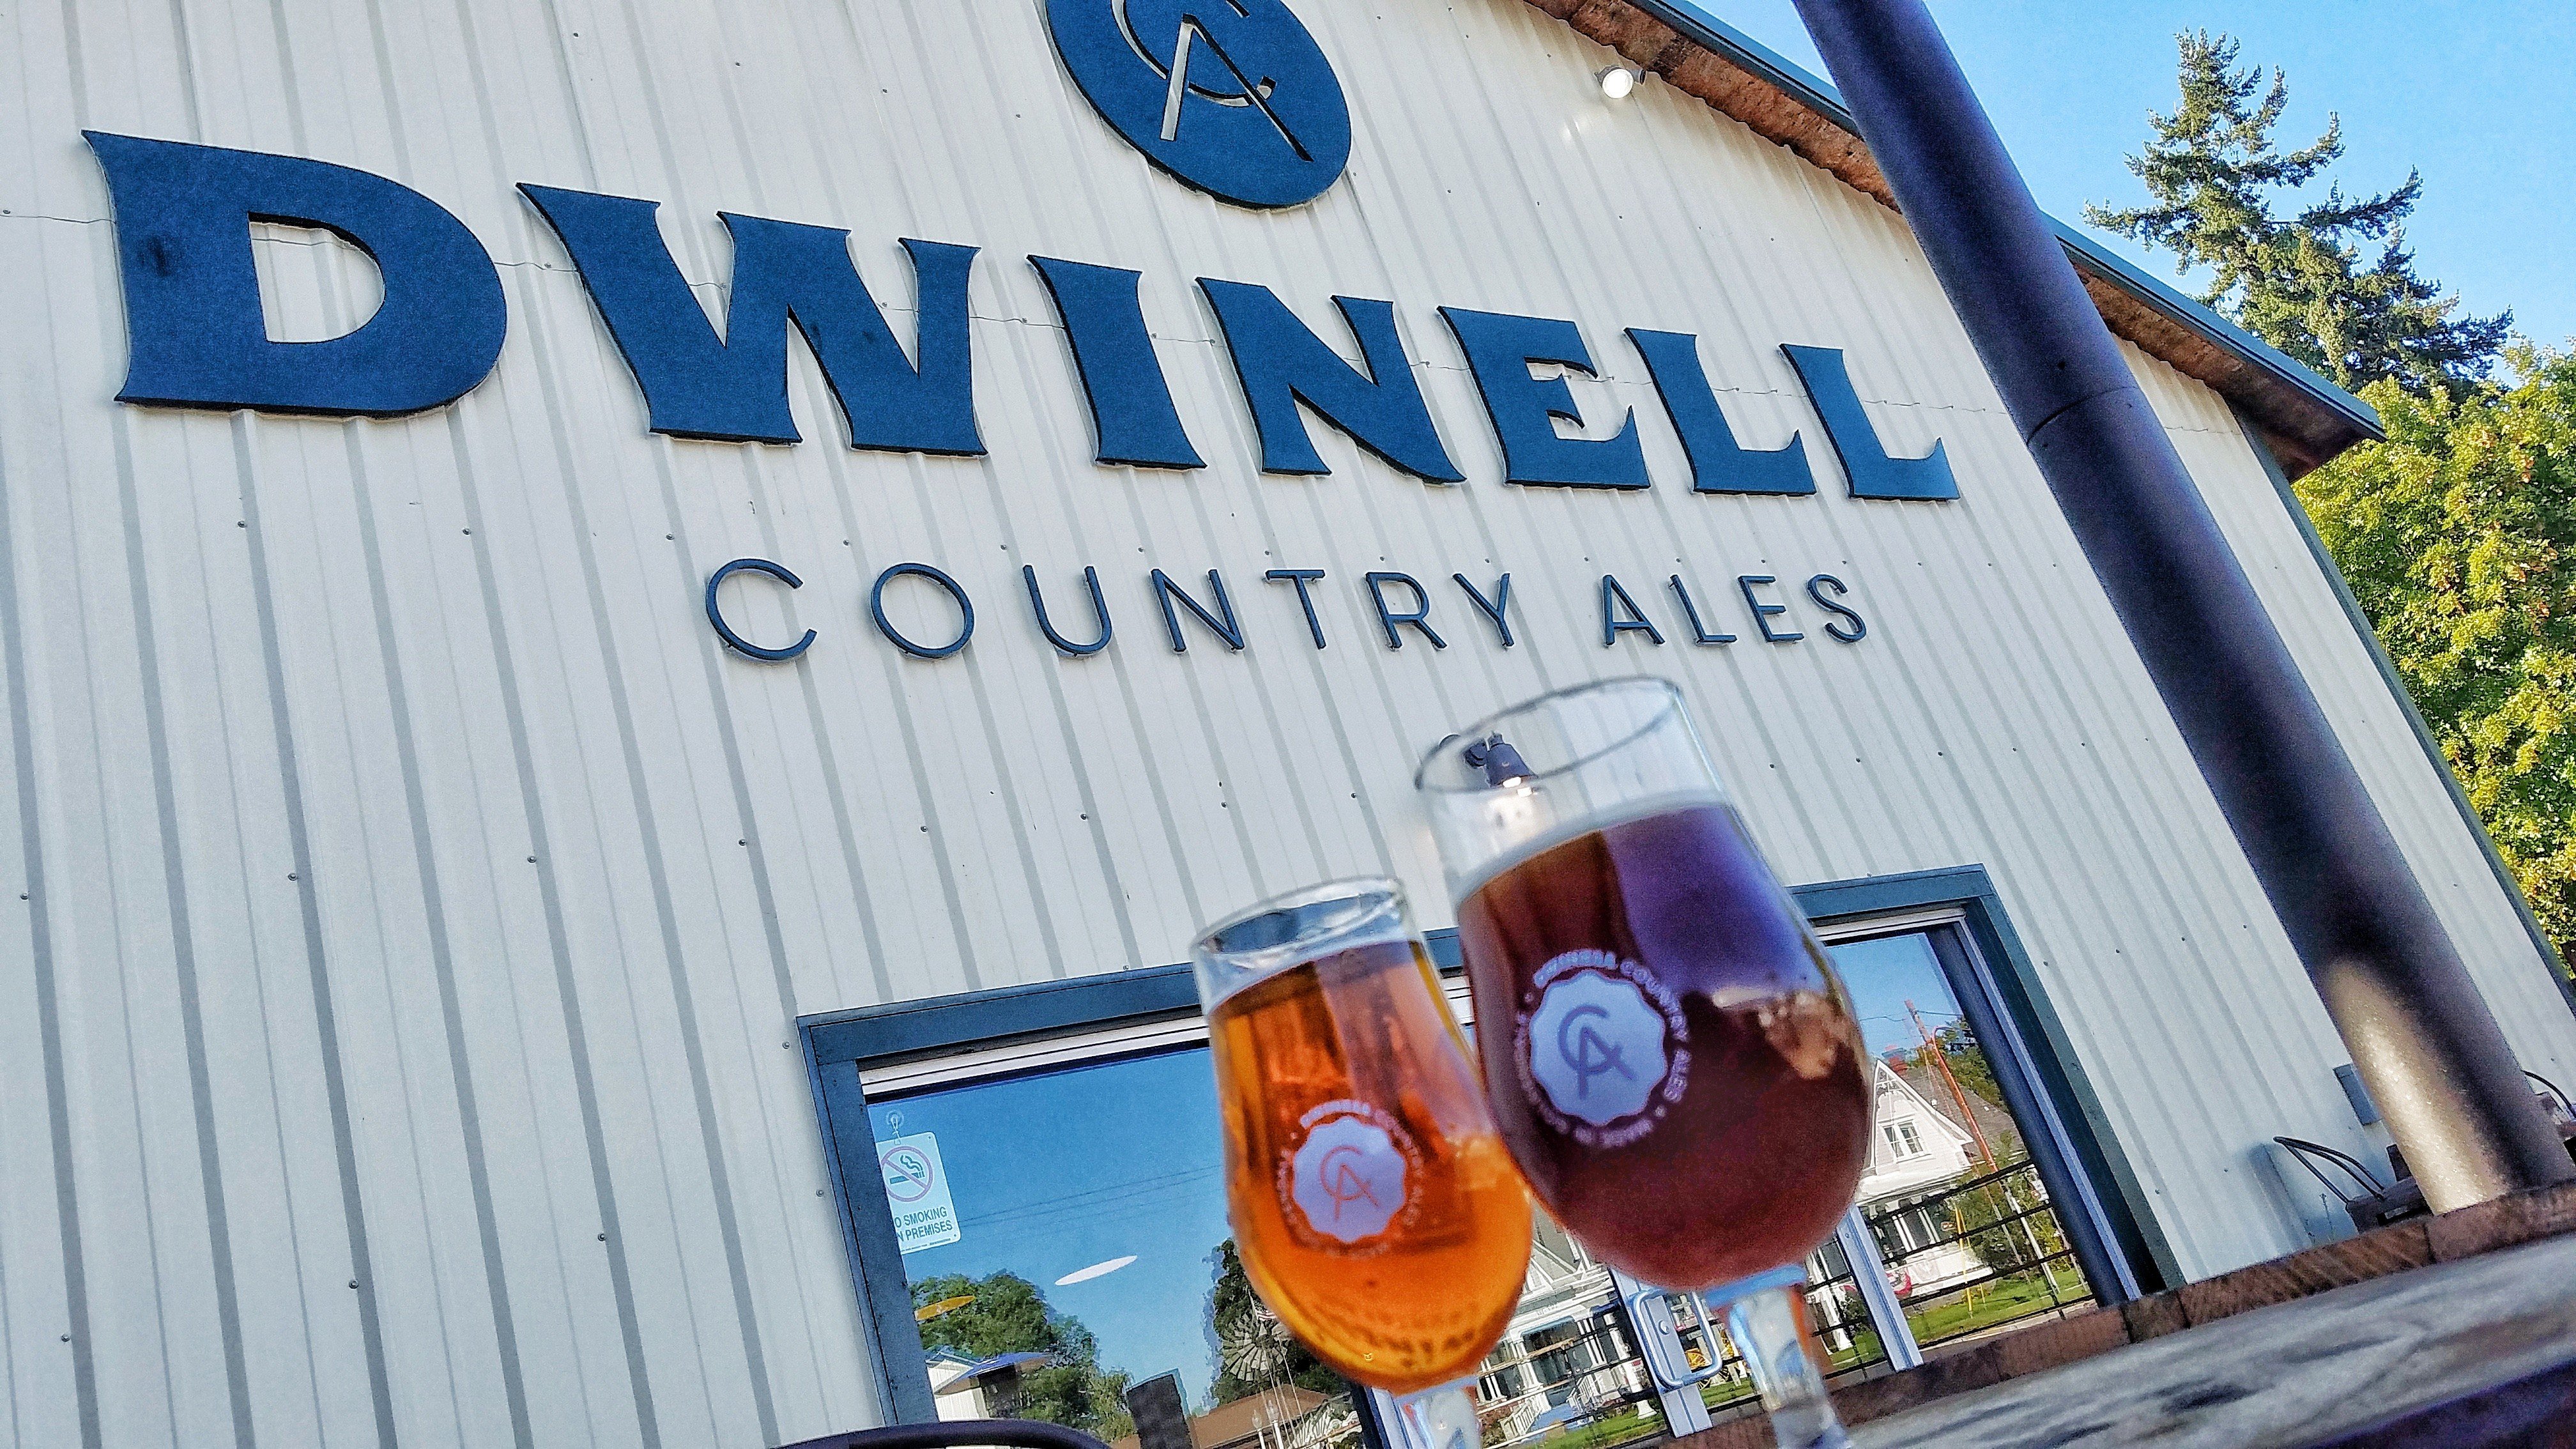 Dwinell Country Ales Brauerei aus Vereinigte Staaten